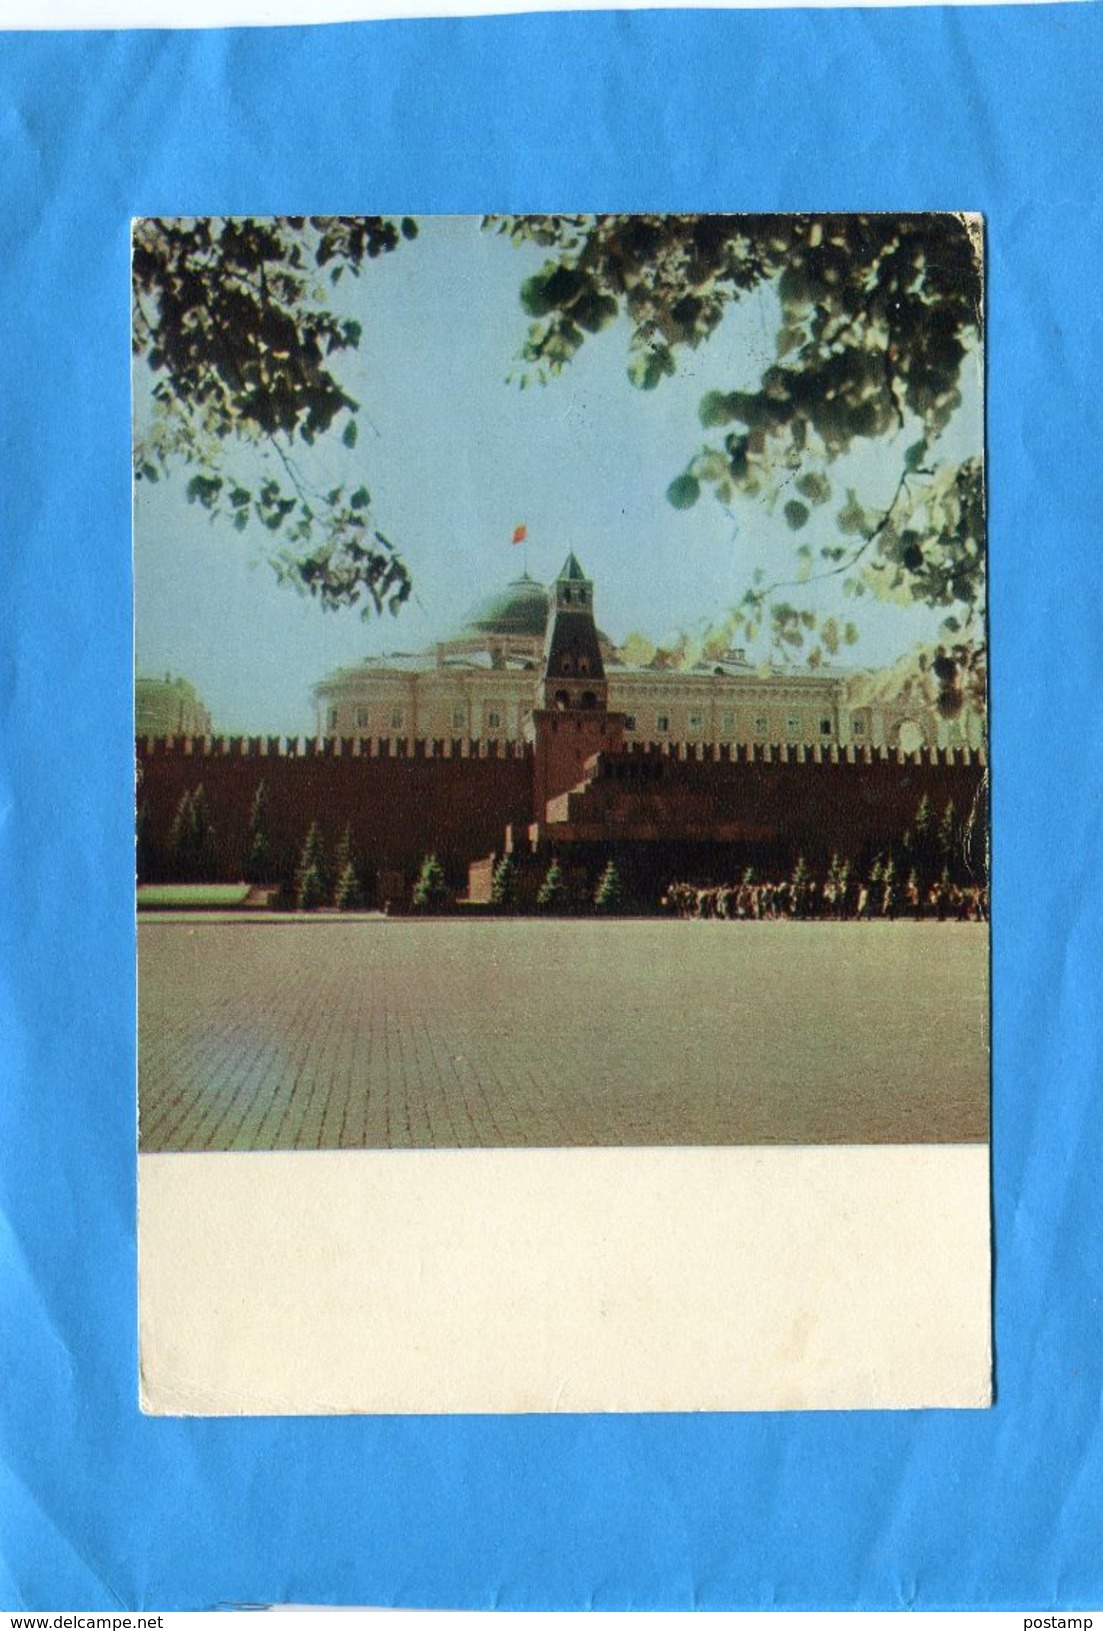 MARCOPHILIE--U R SS-stamp N°3062- Romain Rolland-érivain Français-cad 1966 Sur Cpm  Kremlin-pour Françe - Macchine Per Obliterare (EMA)